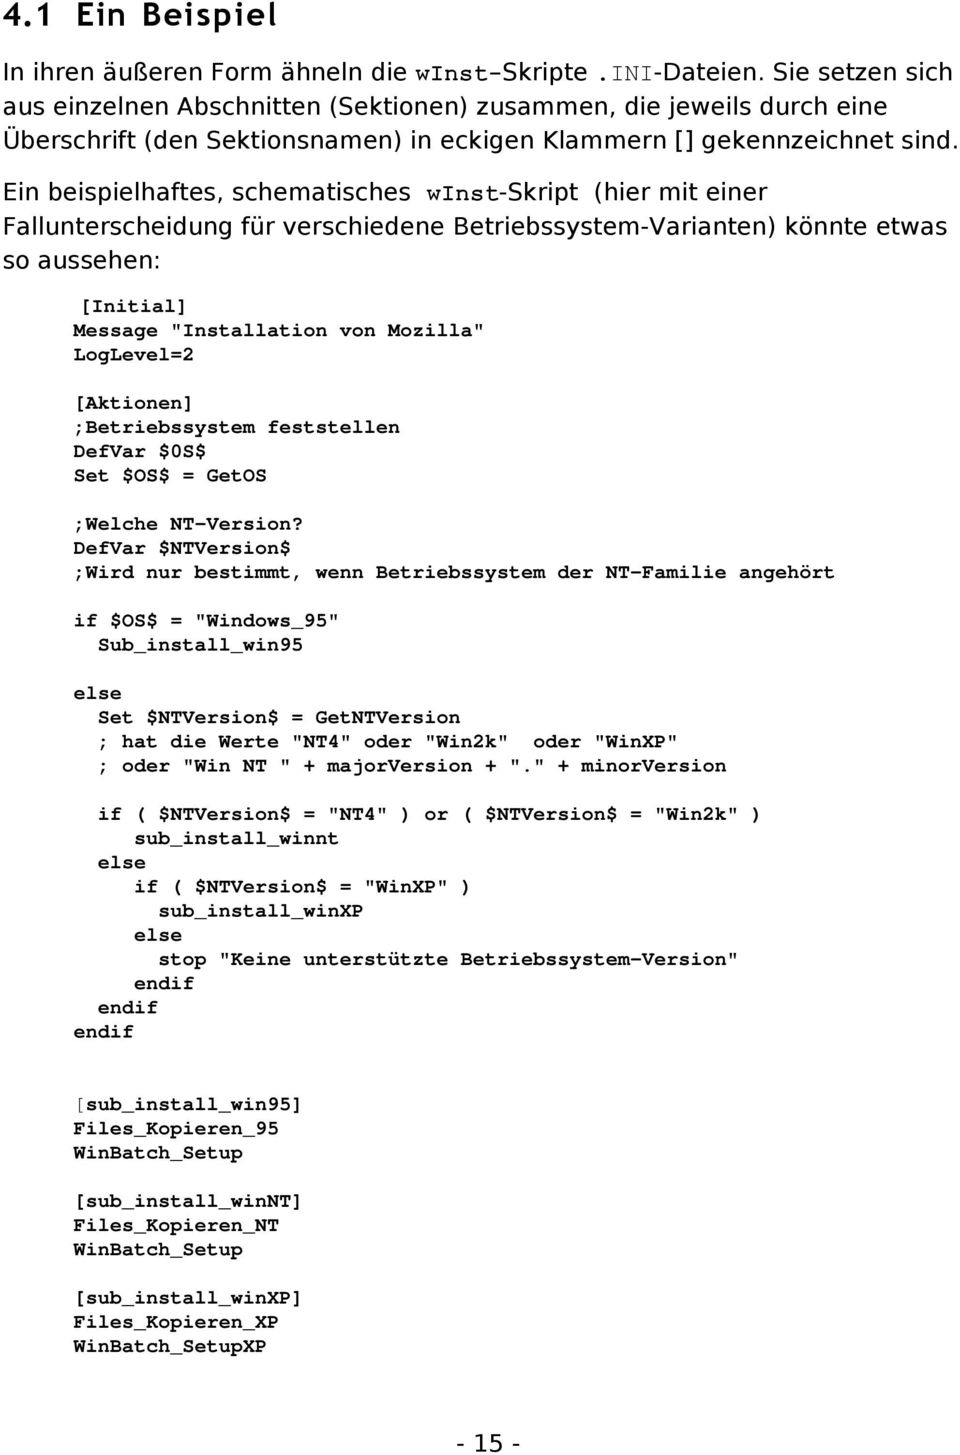 Ein beispielhaftes, schematisches winst-skript (hier mit einer Fallunterscheidung für verschiedene Betriebssystem-Varianten) könnte etwas so aussehen: [Initial] Message "Installation von Mozilla"